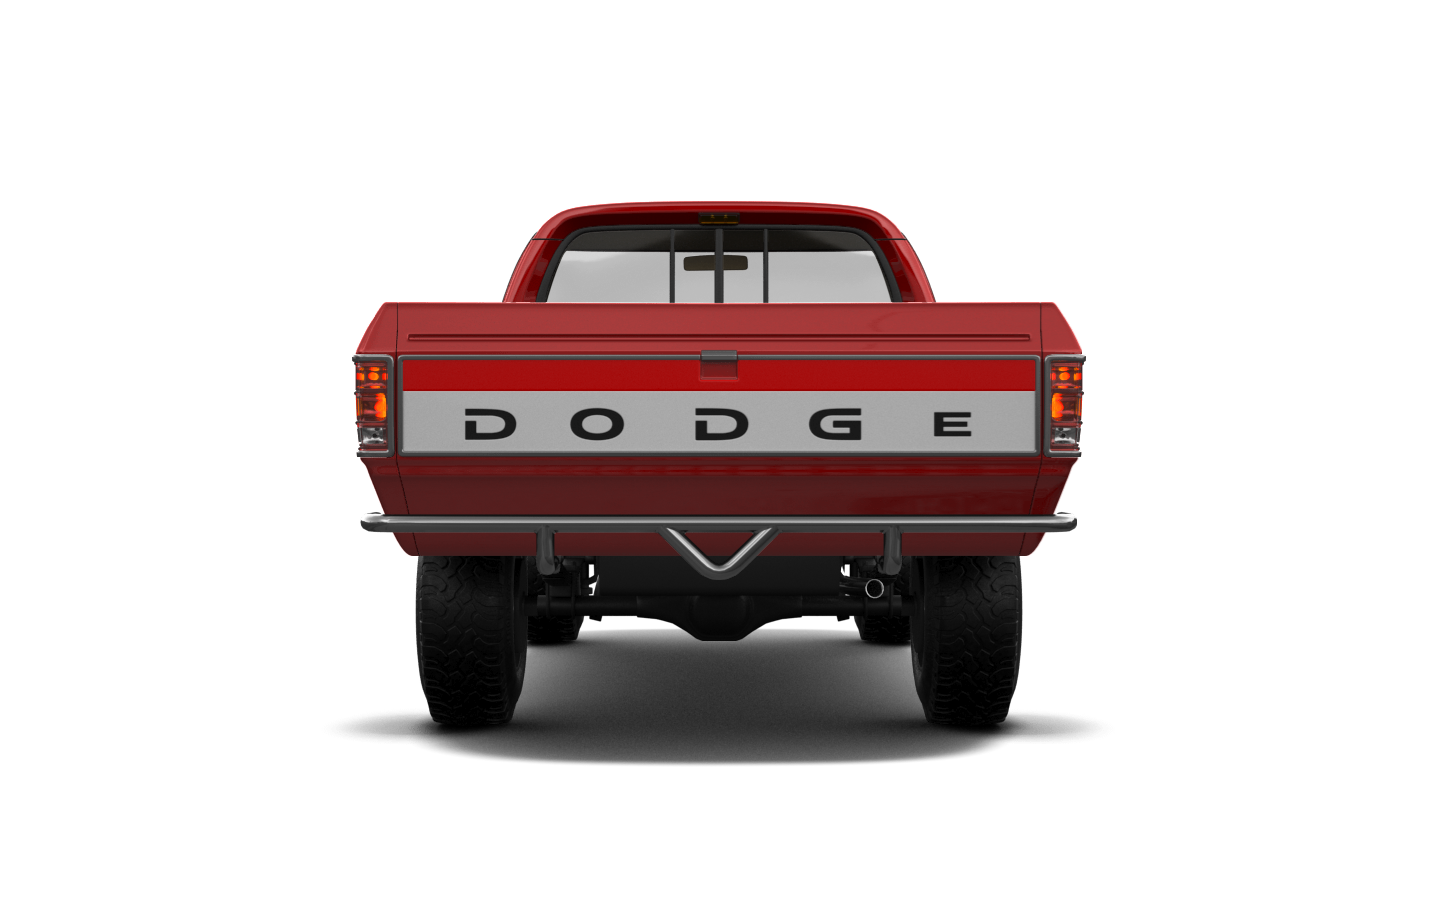 Dodge Ram 2 Door pickup truck 1991